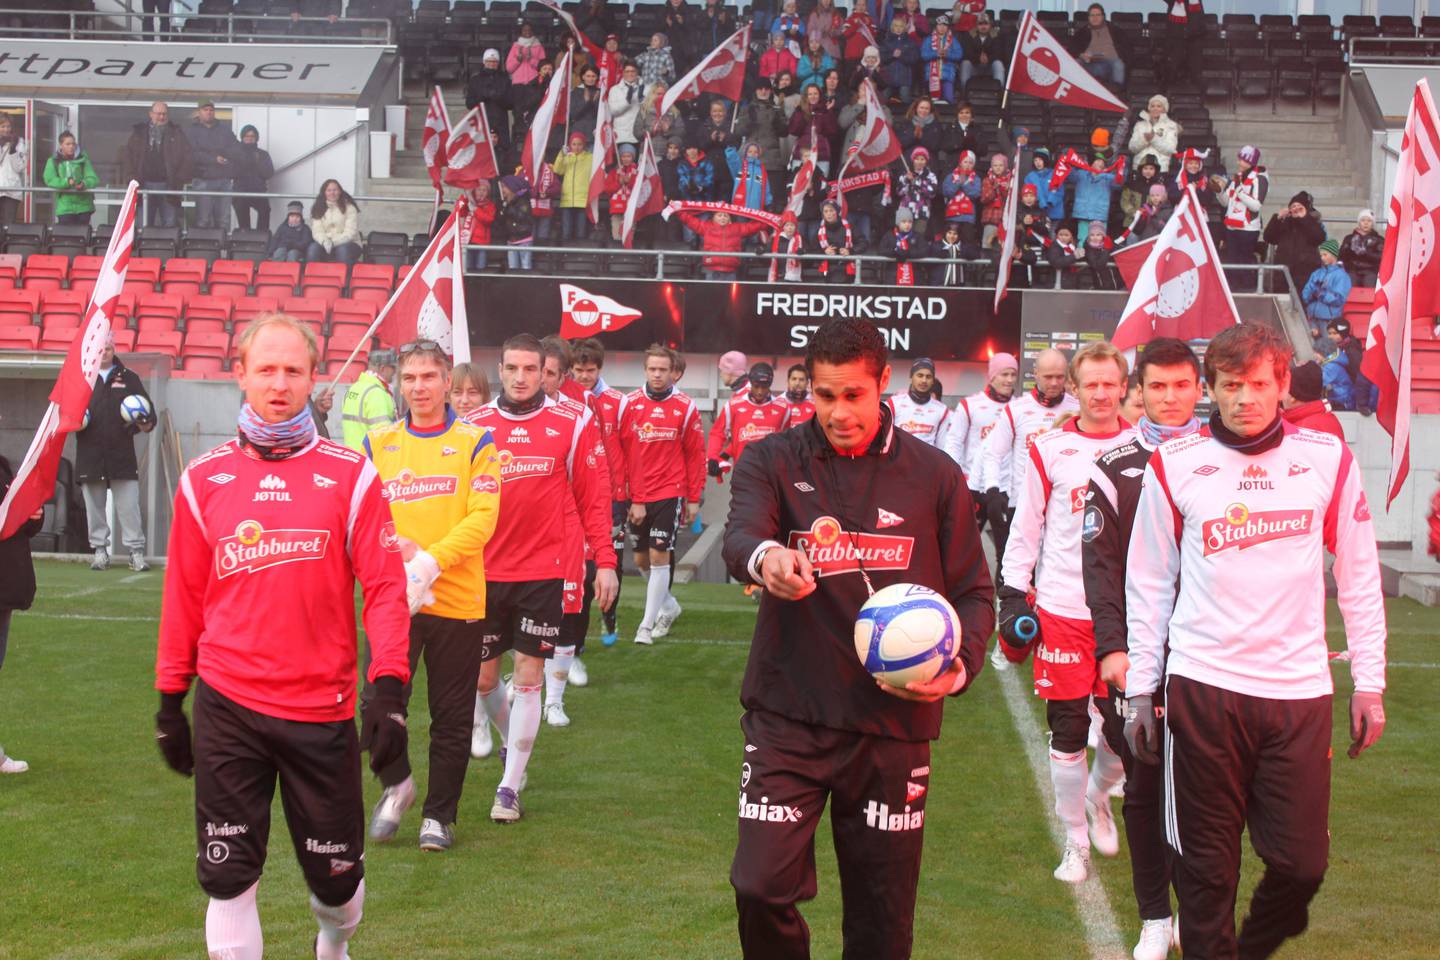 Gatelaget og FFKs A-lag stilte begge til et  internt showoppgjør på Fredrikstad stadion i slutten av gatelagets oppstartsår 2011.